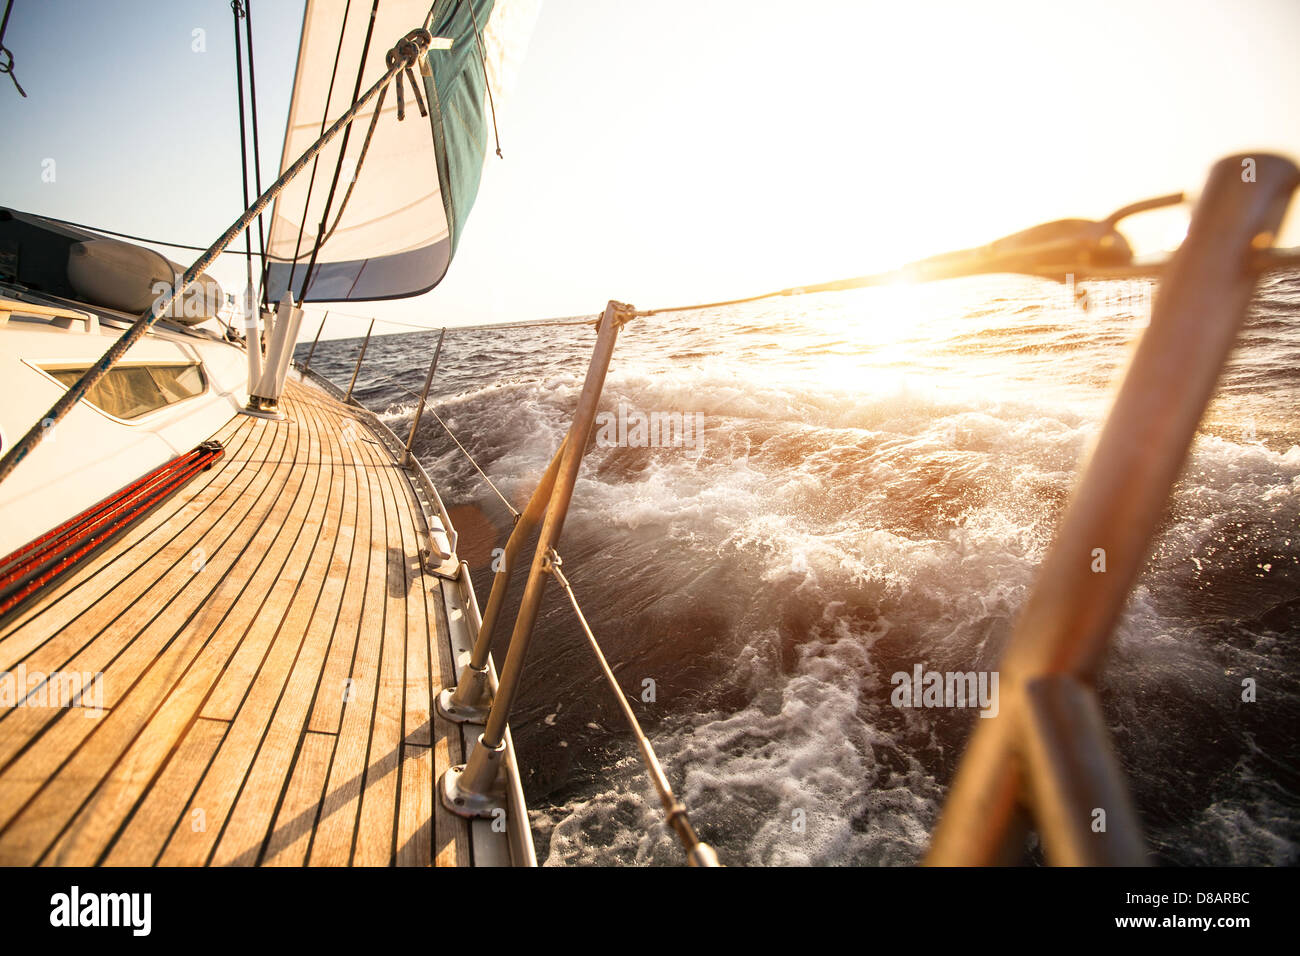 Sailing regatta in the Aegean Sea Stock Photo